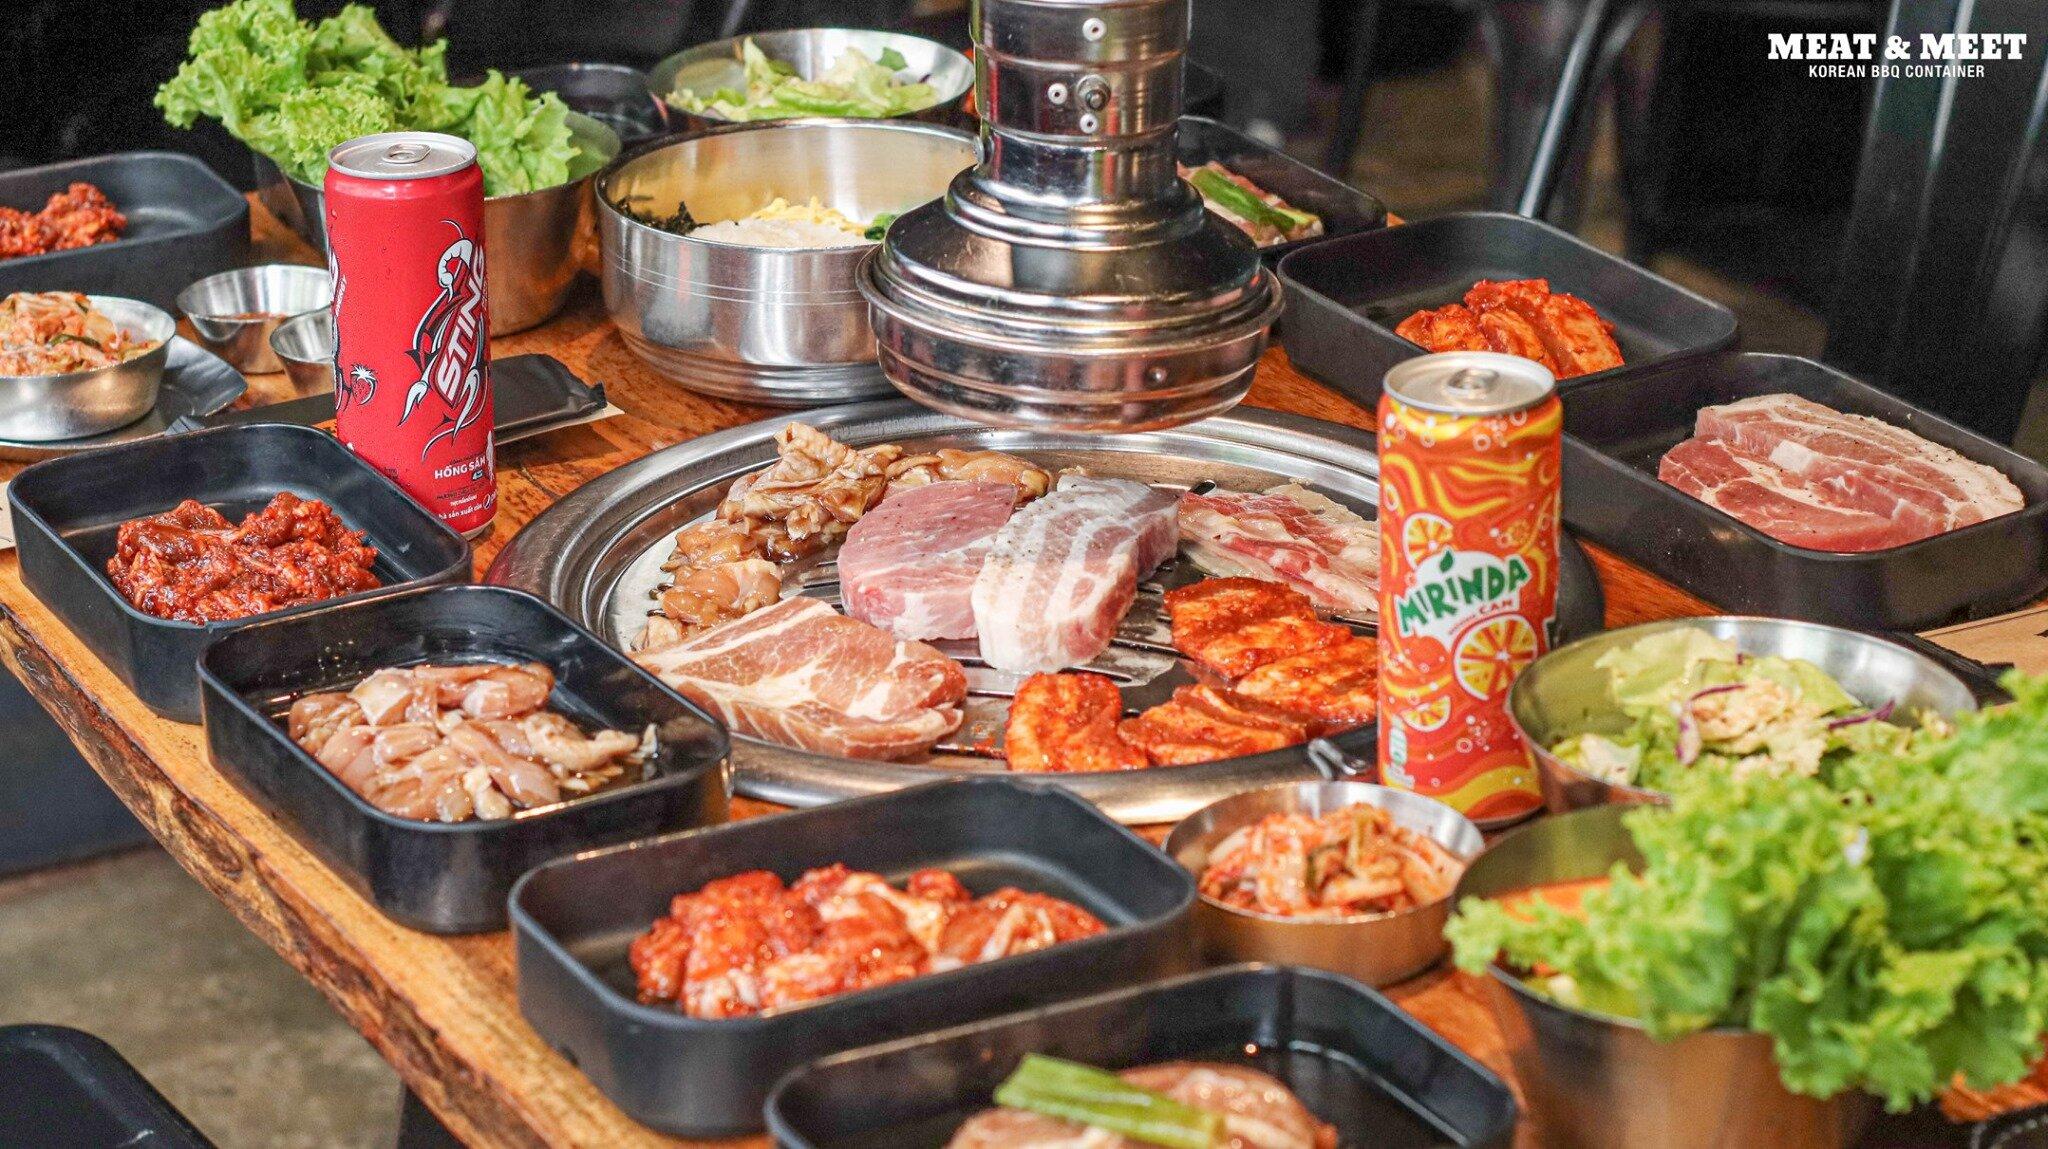 Nhà hàng buffet Meat & Meet chủ yếu có các loại thịt heo và thịt bò (Ảnh Meat & Meet BBQ)